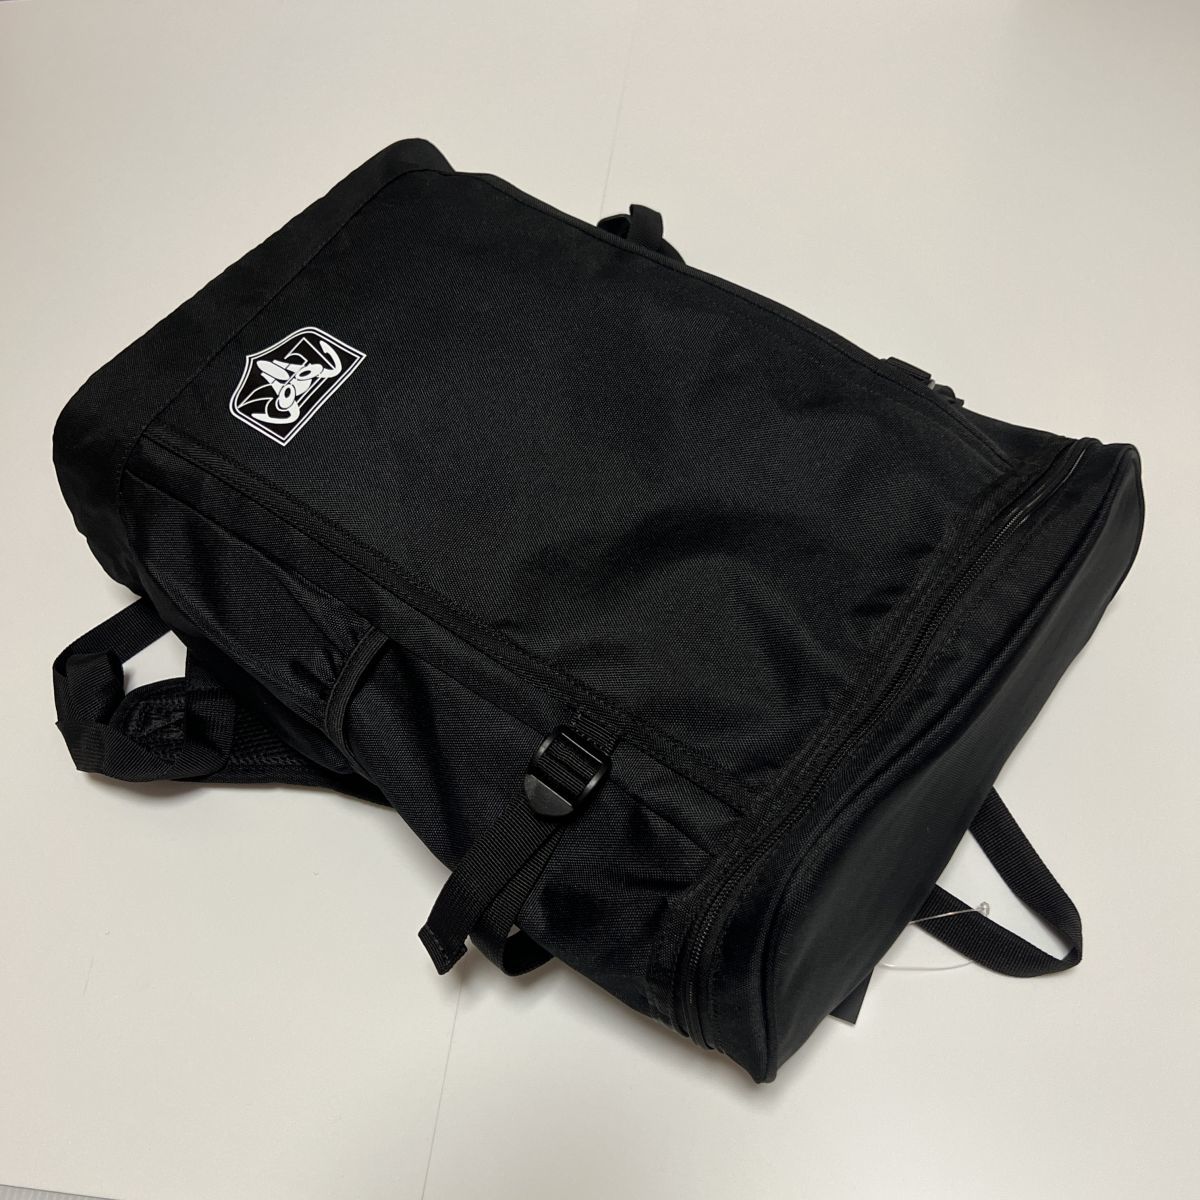 *BANDAI Bandai Kamen Rider очень редкий новый товар мужской рюкзак рюкзак сумка BAG чёрный [2654656F] один шесть *QWER*